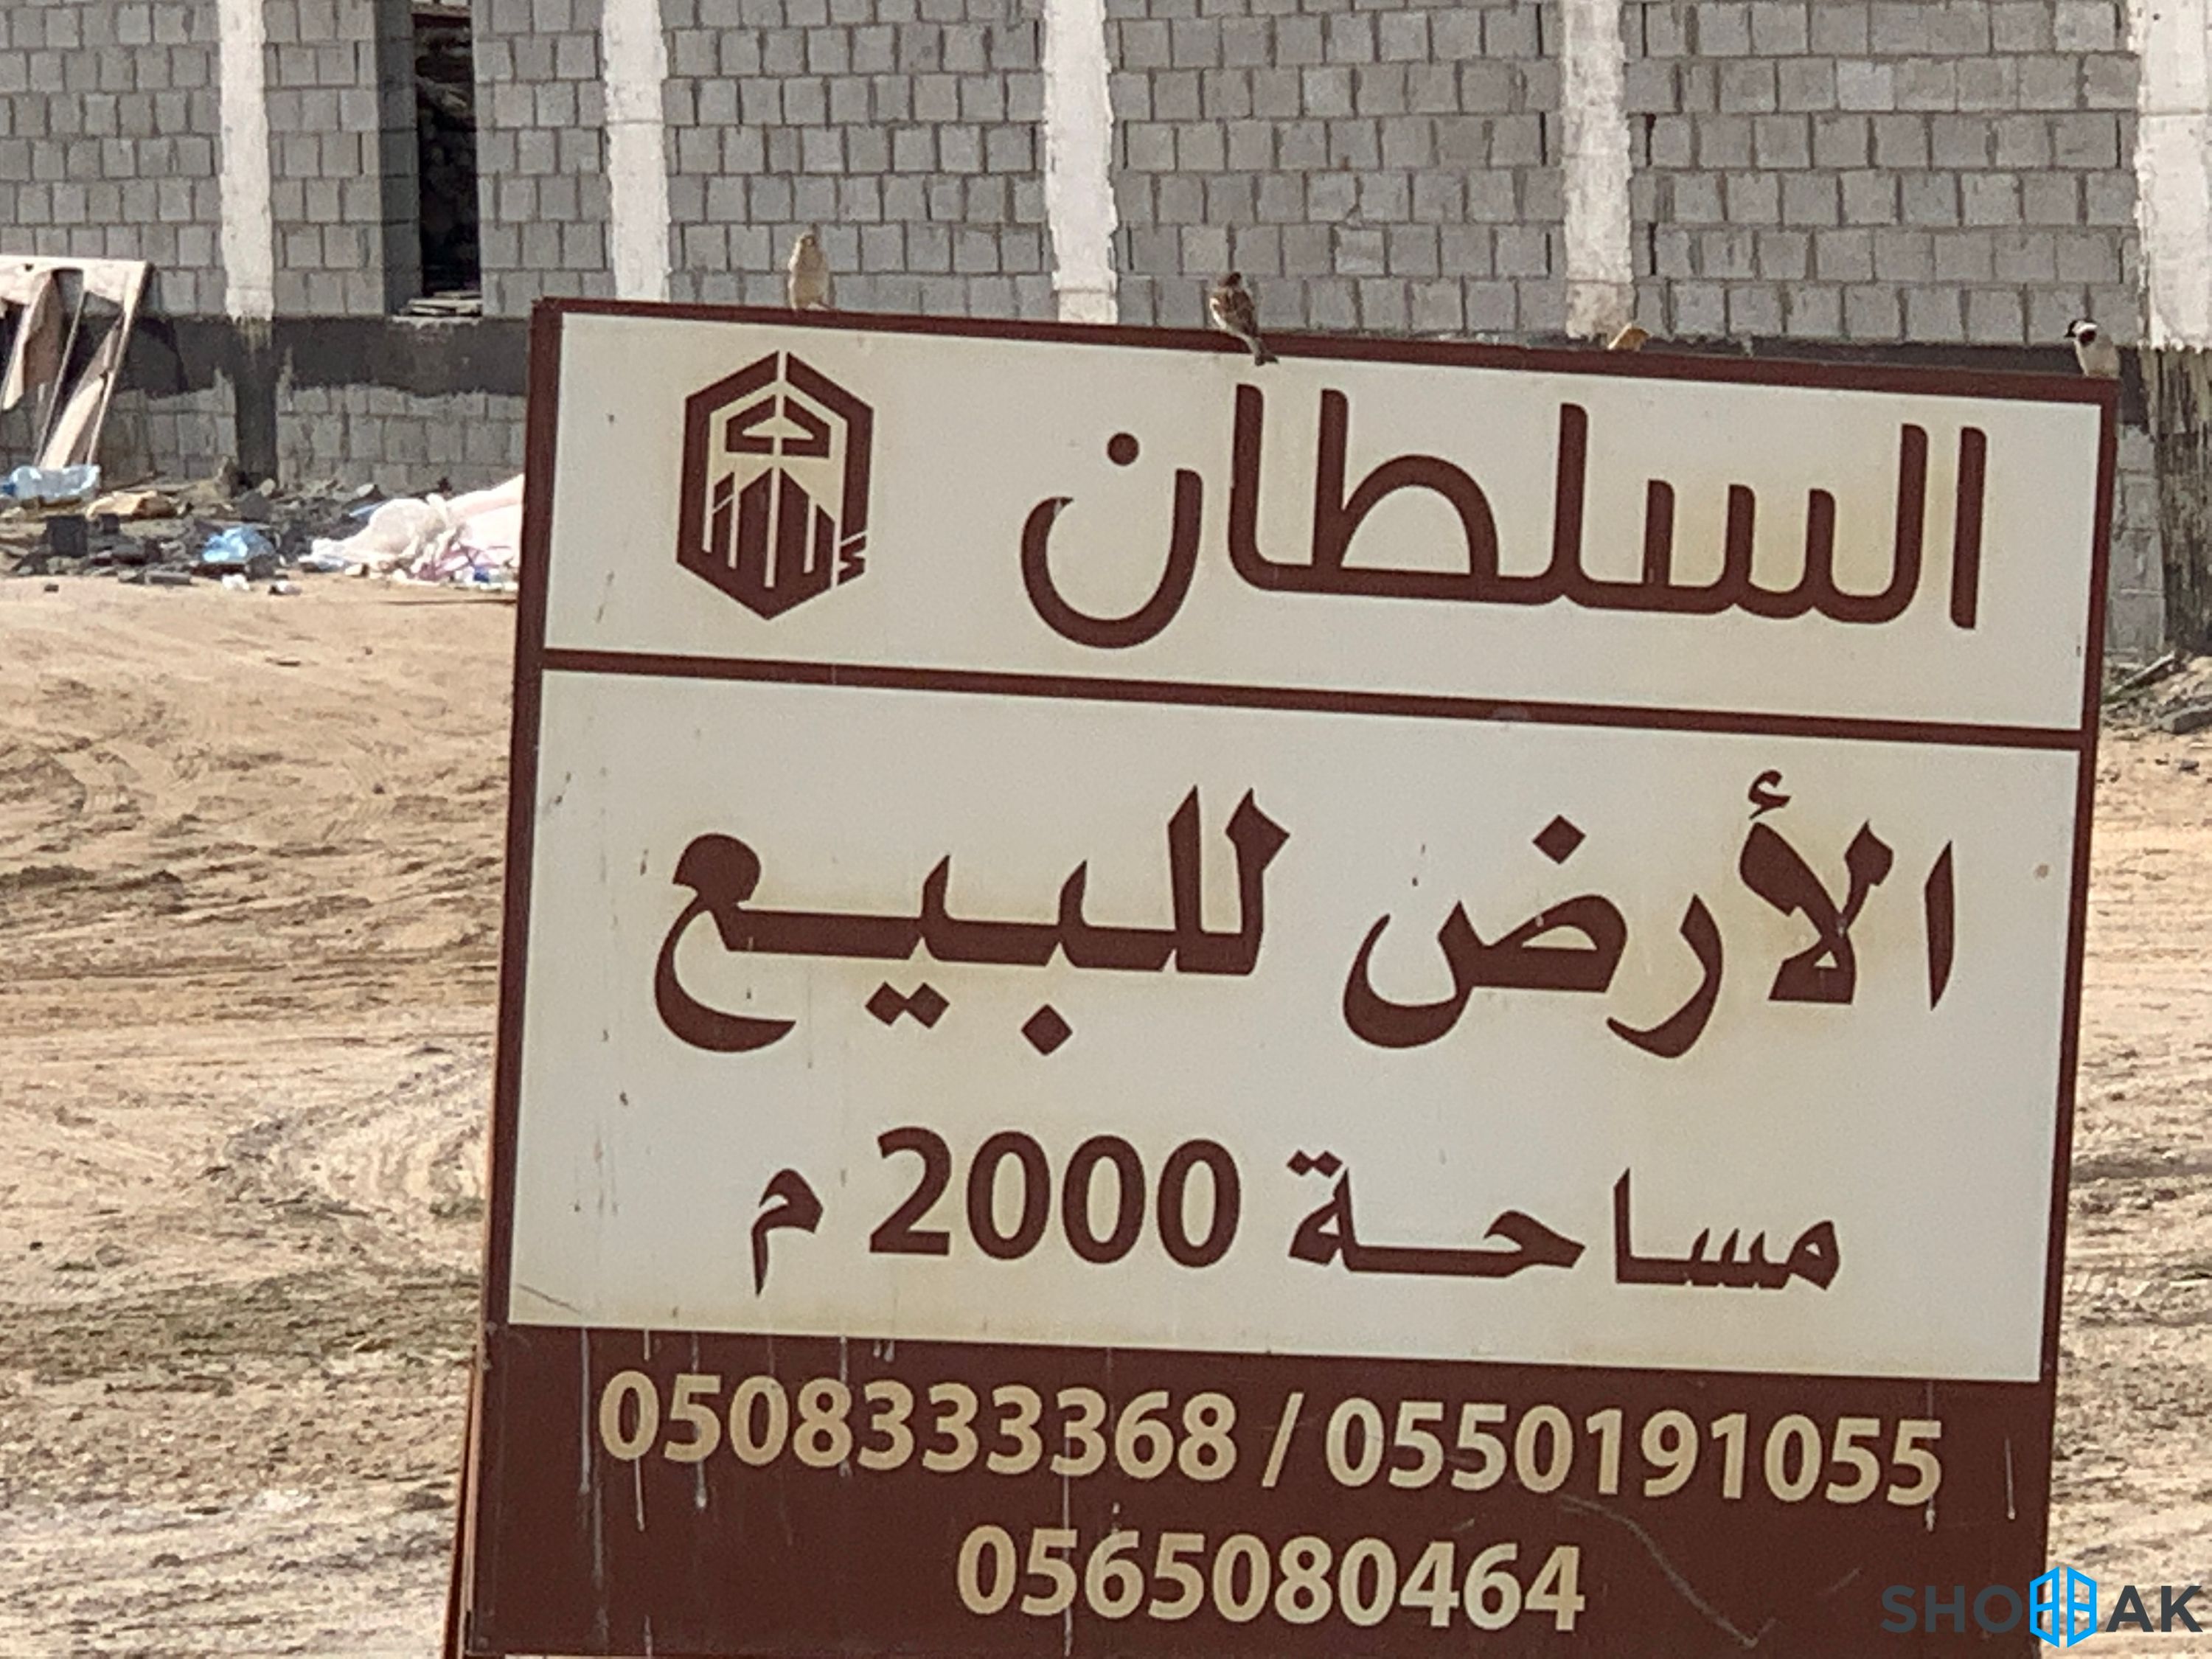 أرض للبيع شارع ابن جبر حي البندرية أرض رقم 23 شباك السعودية